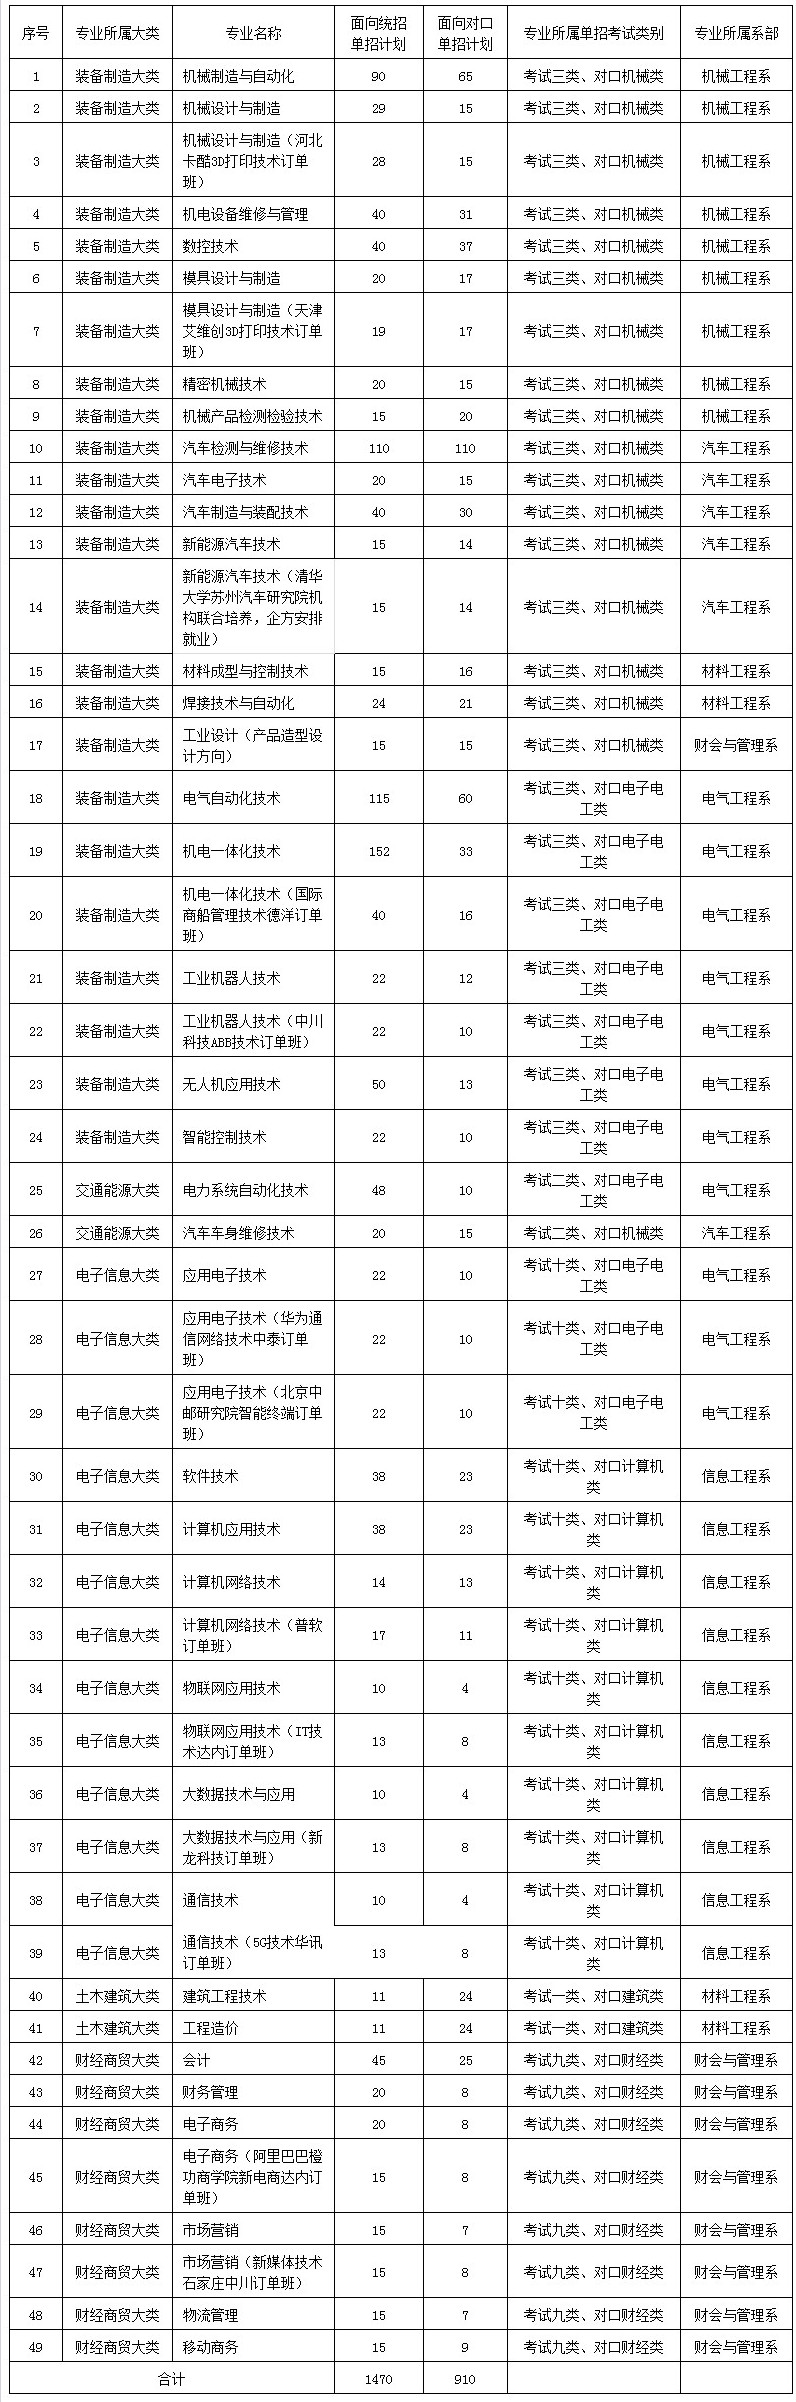 2018年河北机电职业技术学院单招计划.jpg